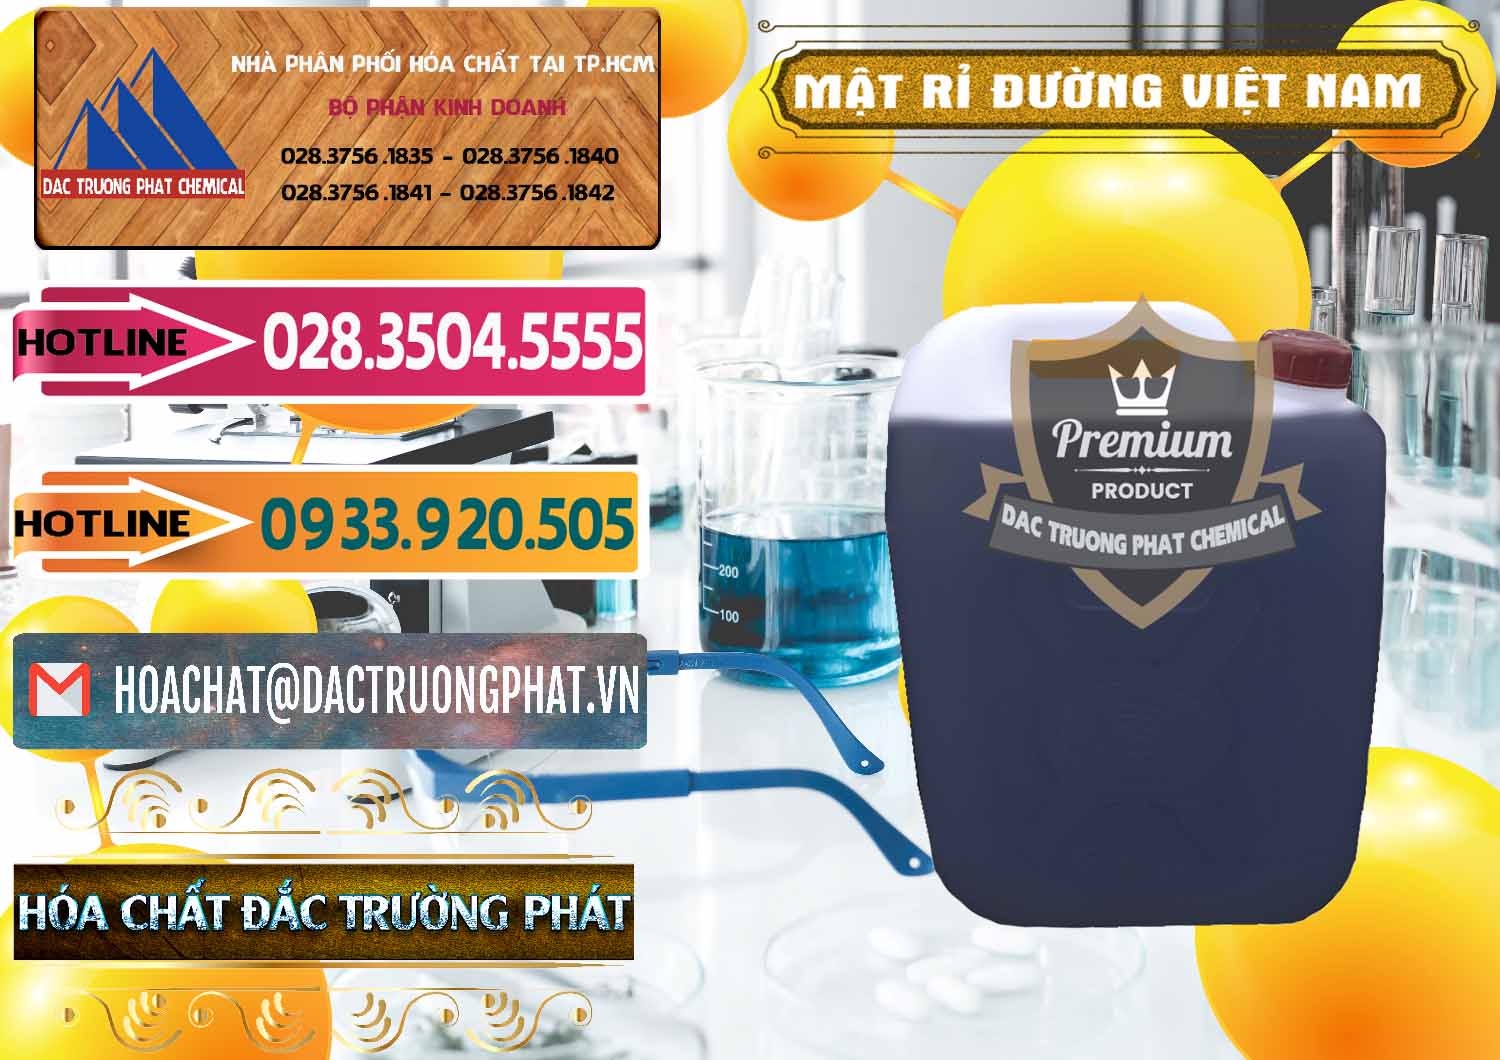 Nhà phân phối - cung ứng Mật Rỉ Đường Việt Nam - 0306 - Công ty chuyên cung cấp và kinh doanh hóa chất tại TP.HCM - dactruongphat.vn